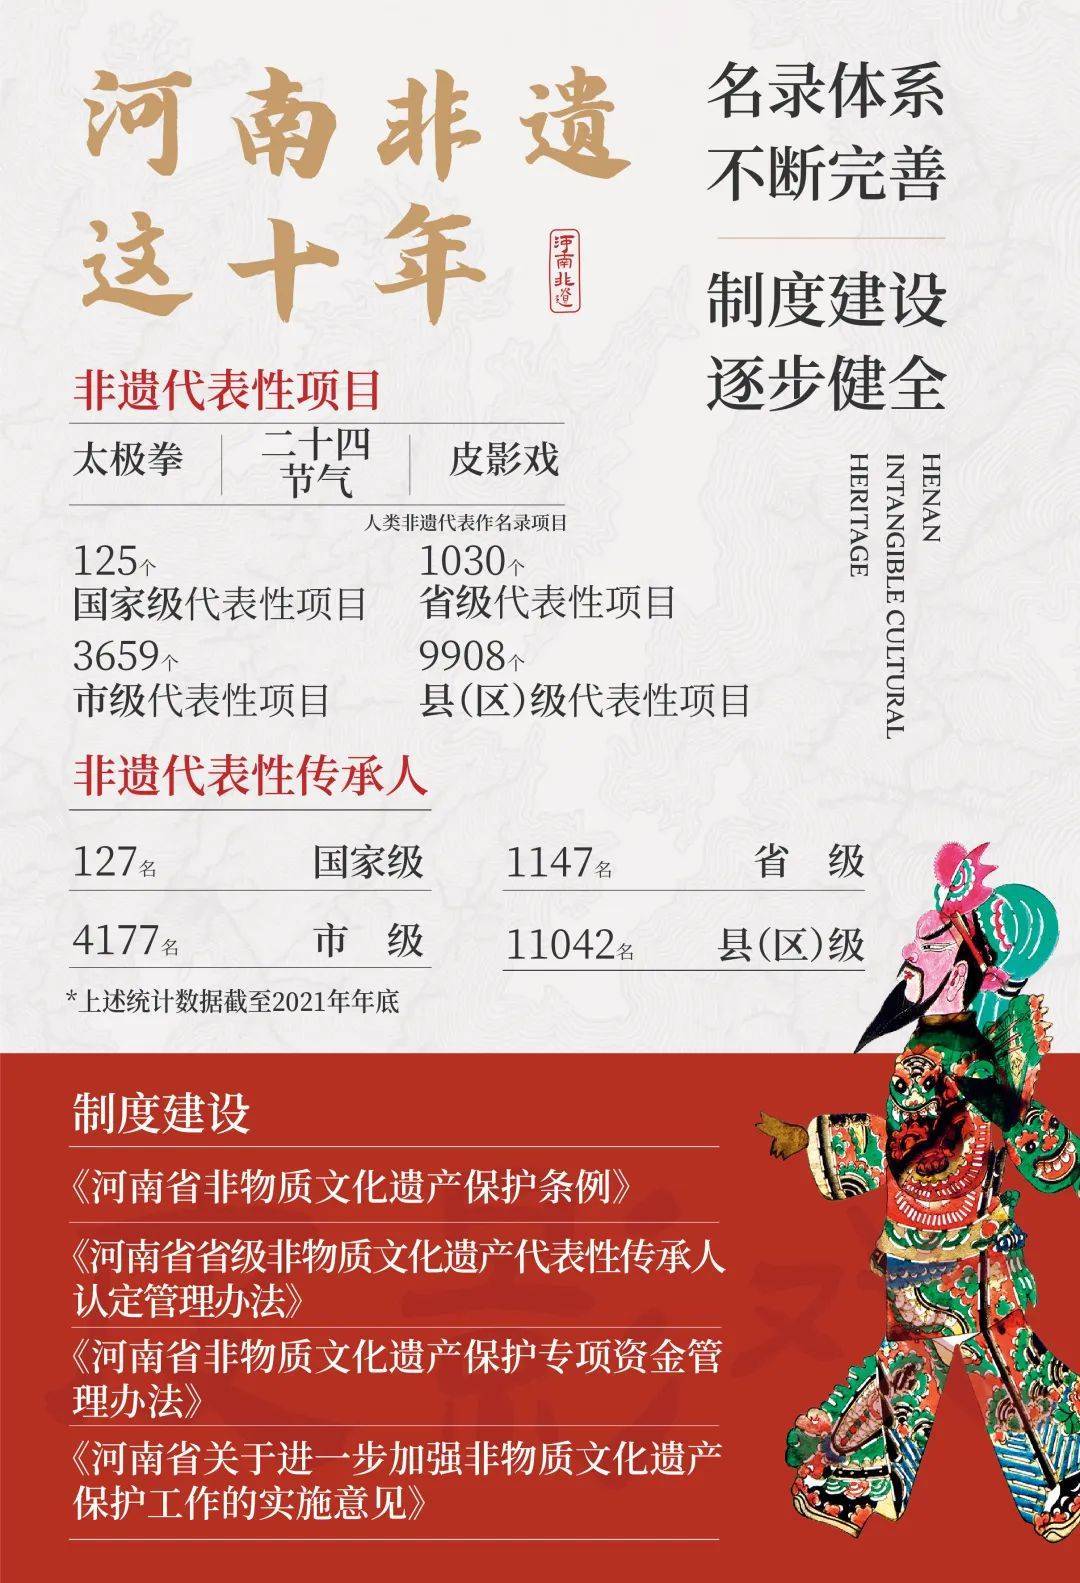 【大河早新闻】3分钟看懂二十大怎么开/郑州有597位百岁老人/屠呦呦为测青蒿素安全性曾以身试药